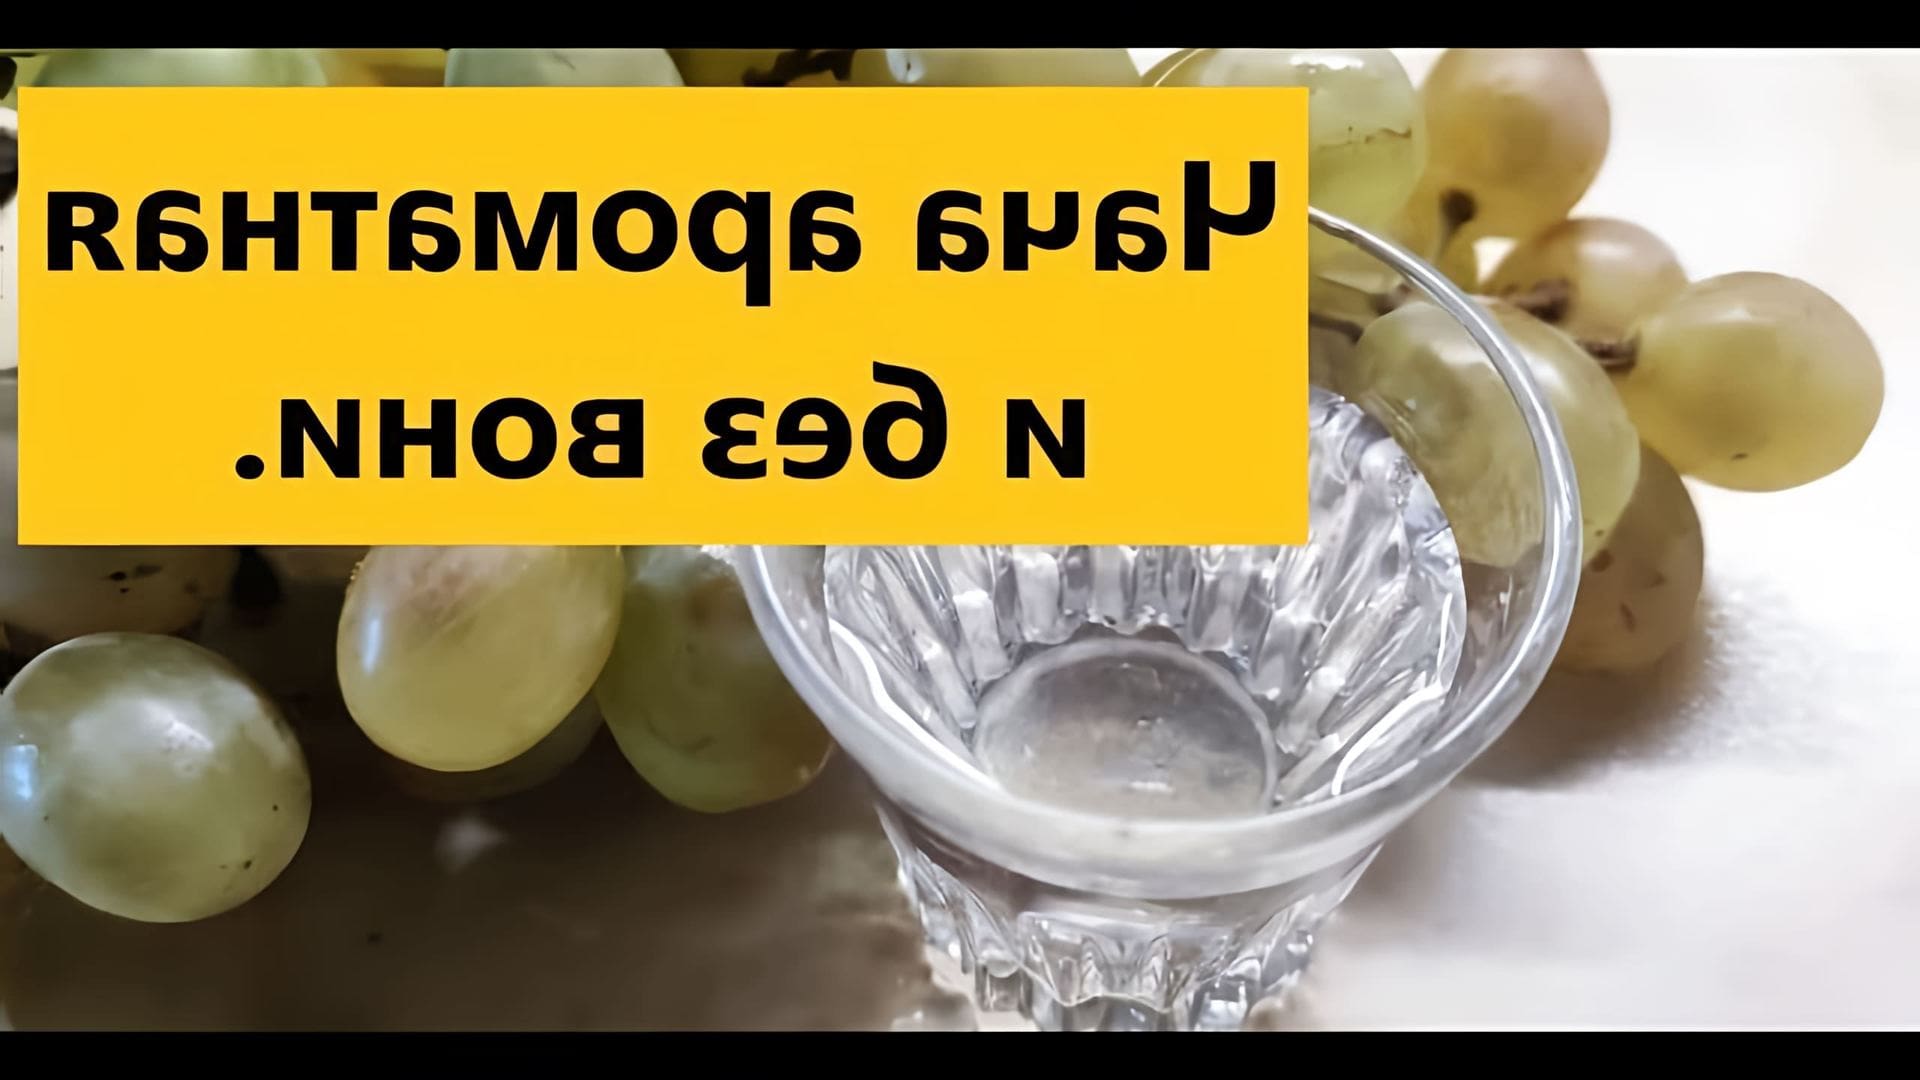 В данном видео демонстрируется процесс приготовления чачи, виноградного самогона